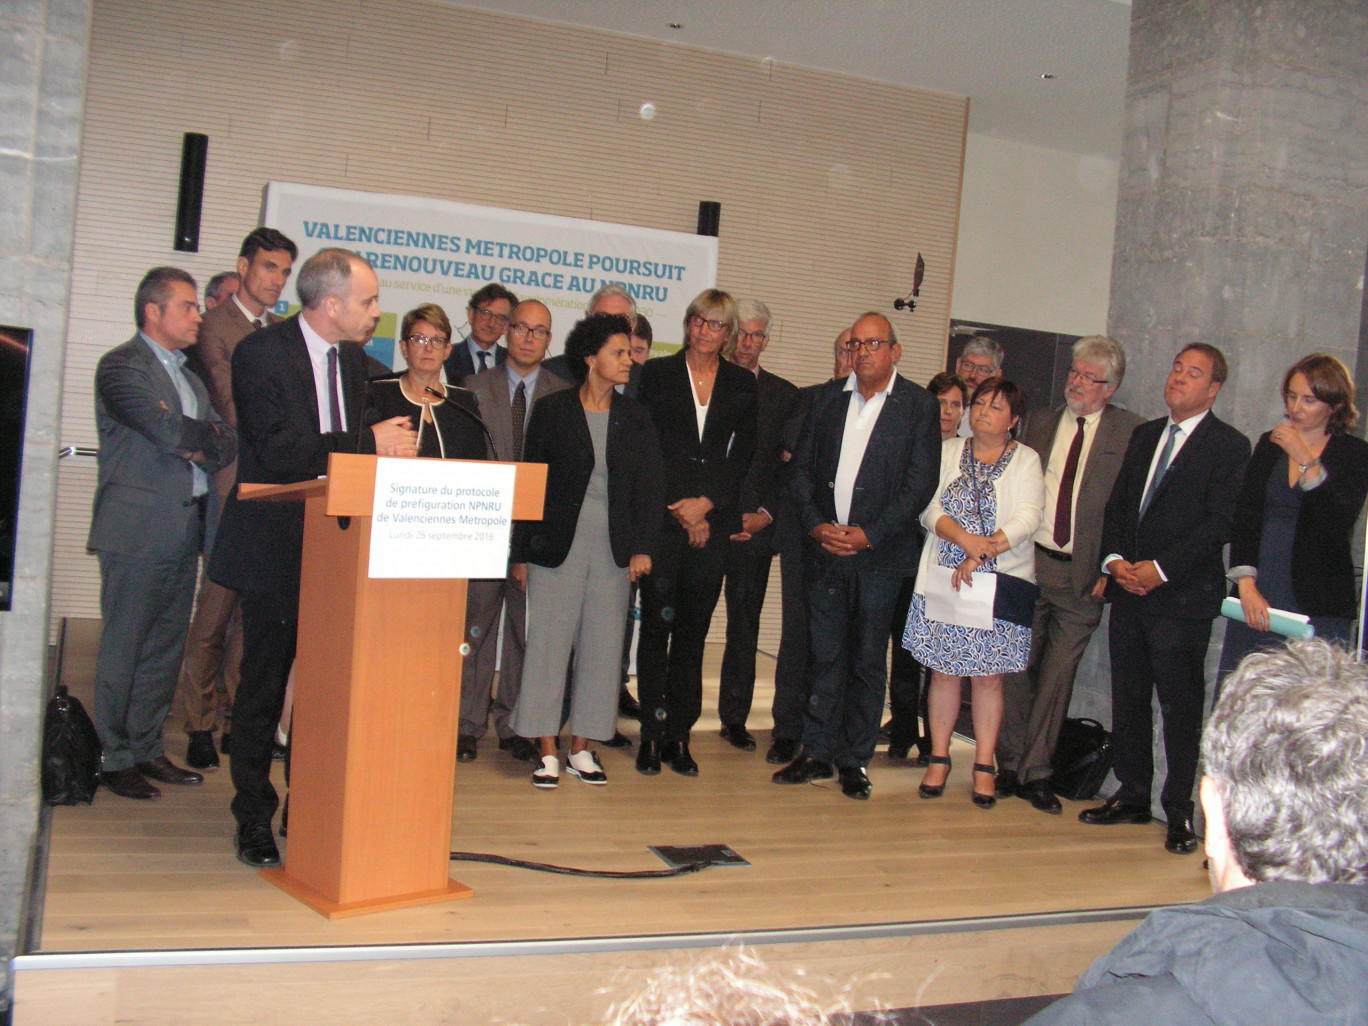 Les partenaires signataires lors de l’intervention de Nicolas Grivel, directeur général de l’ANRU. L’ANRU 2 est lancée dans le Valenciennois.